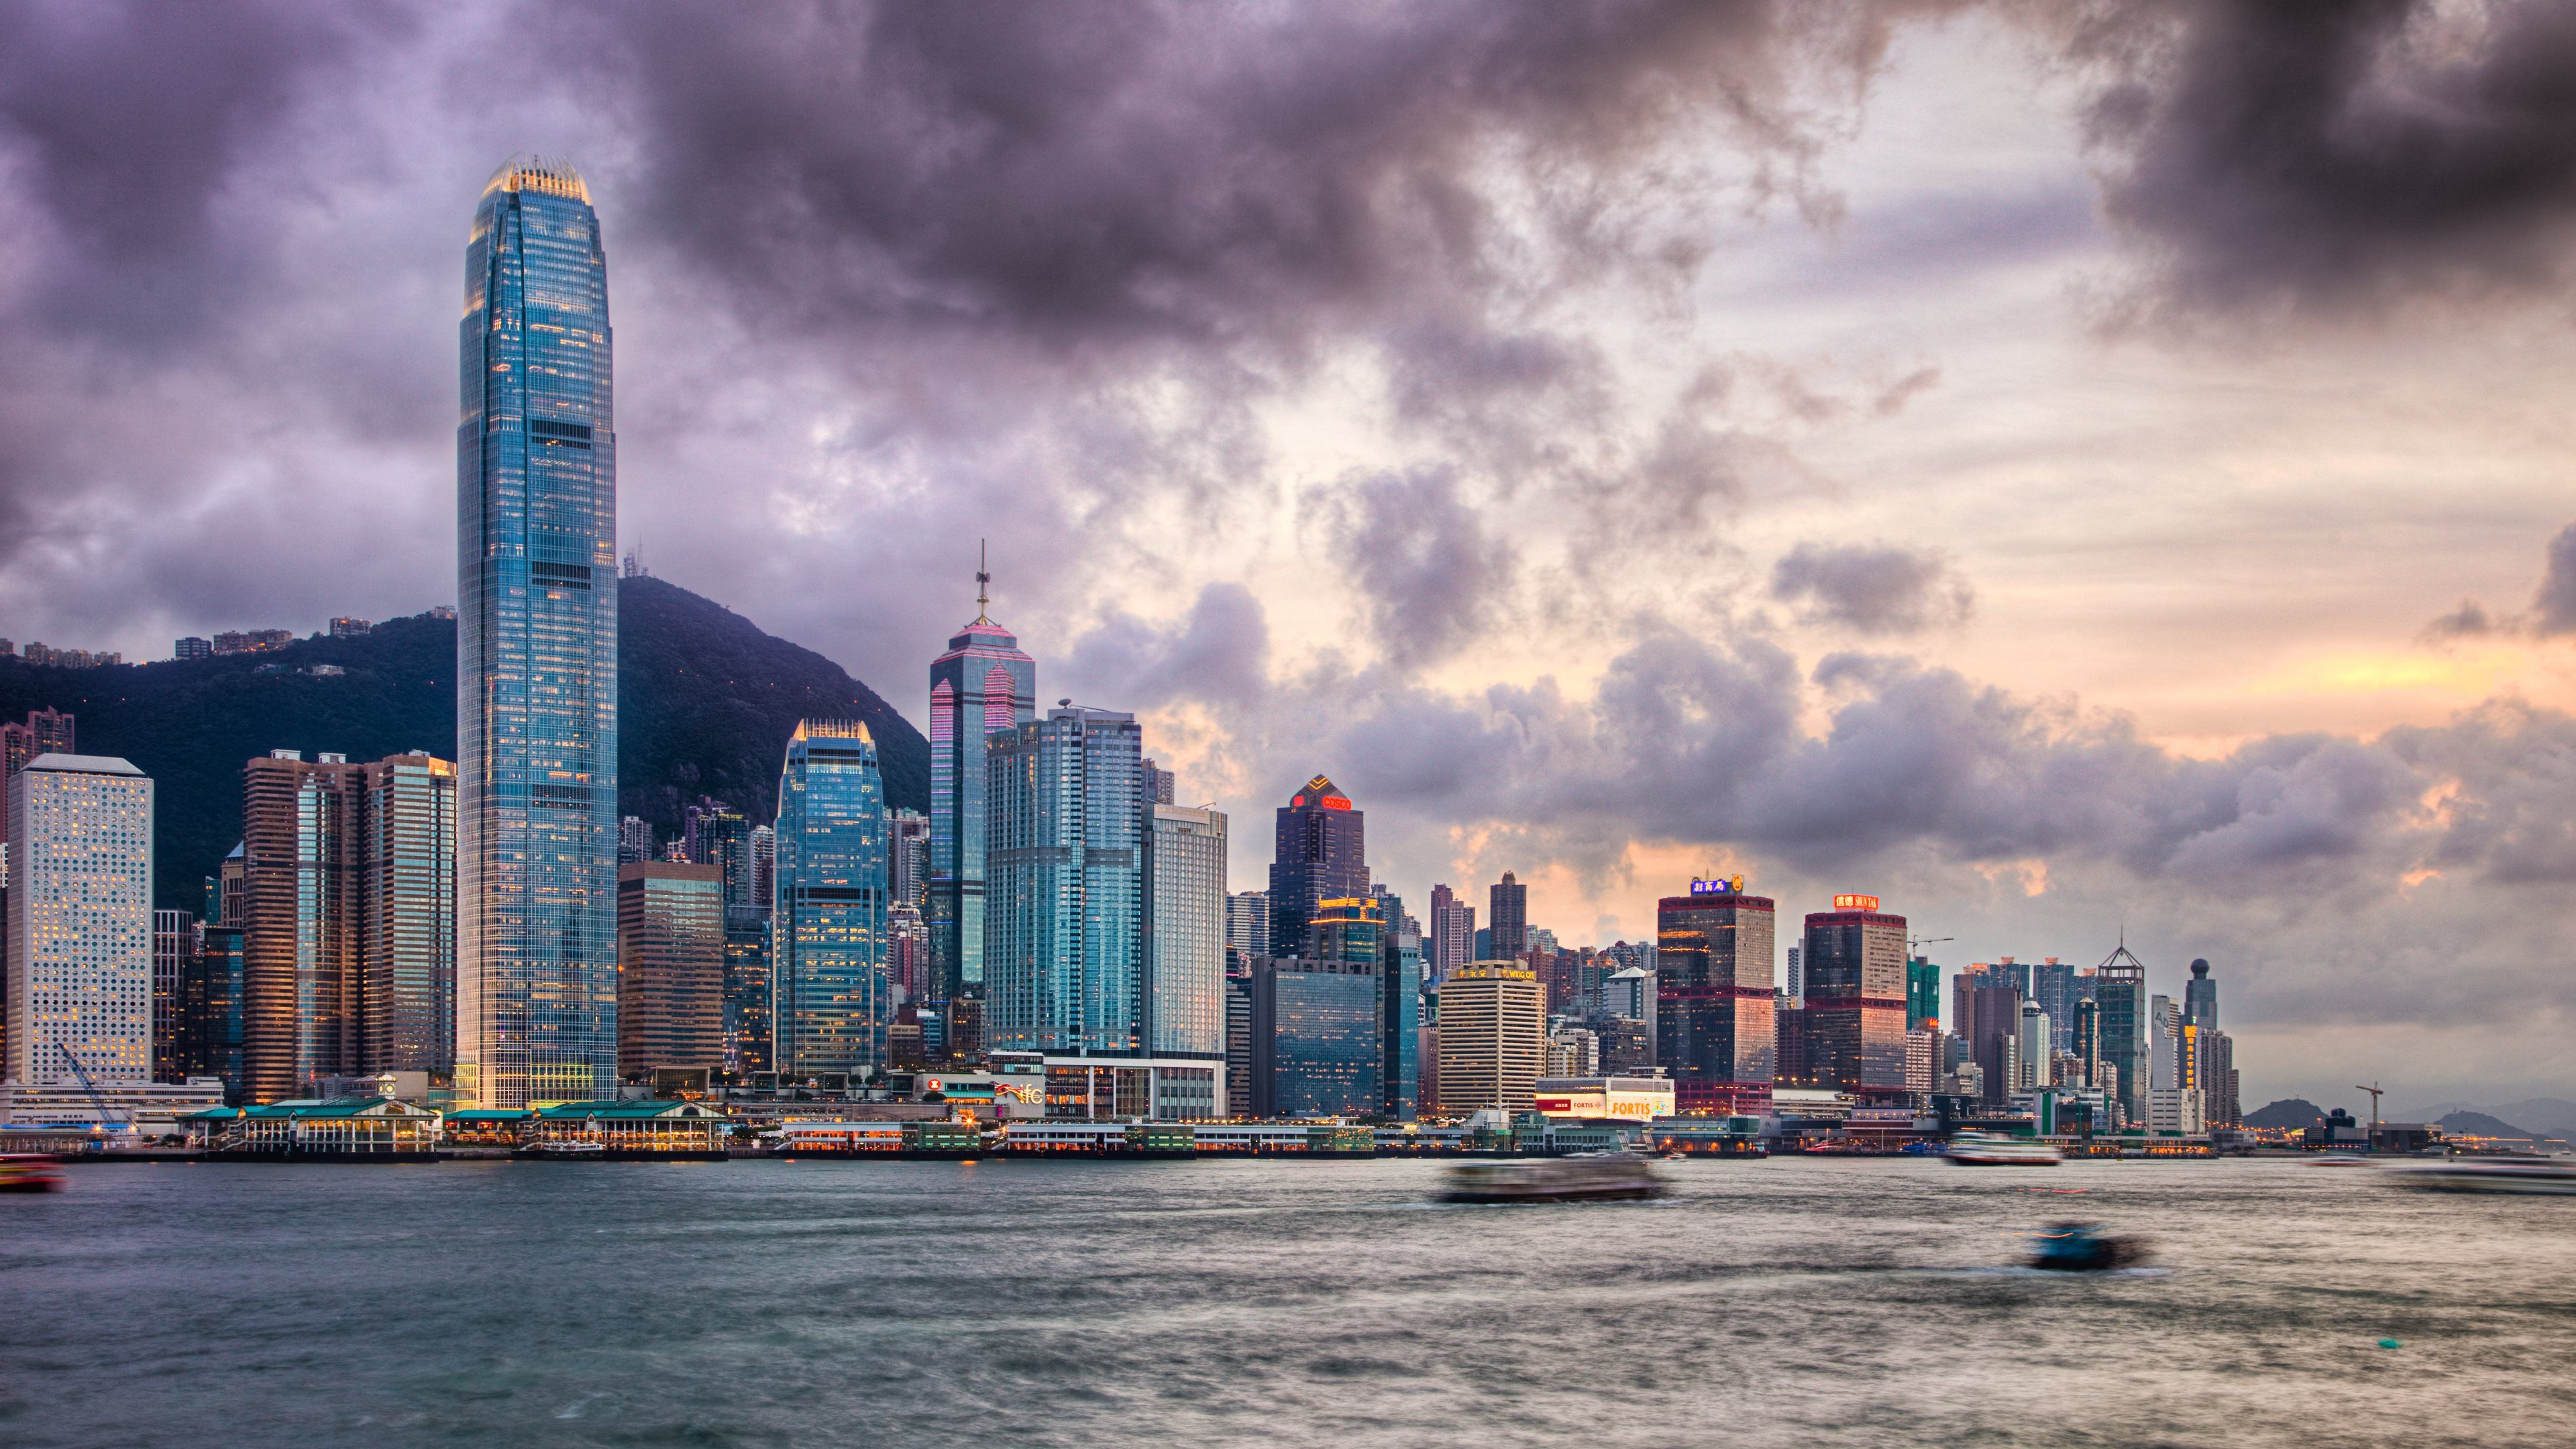 Tải ngay những bức hình nền Hong Kong miễn phí để trang trí cho điện thoại của bạn. Với những hình ảnh tuyệt đẹp trong bộ sưu tập đẹp nhất, bạn sẽ được trải nghiệm một Hong Kong đầy màu sắc và sức sống.